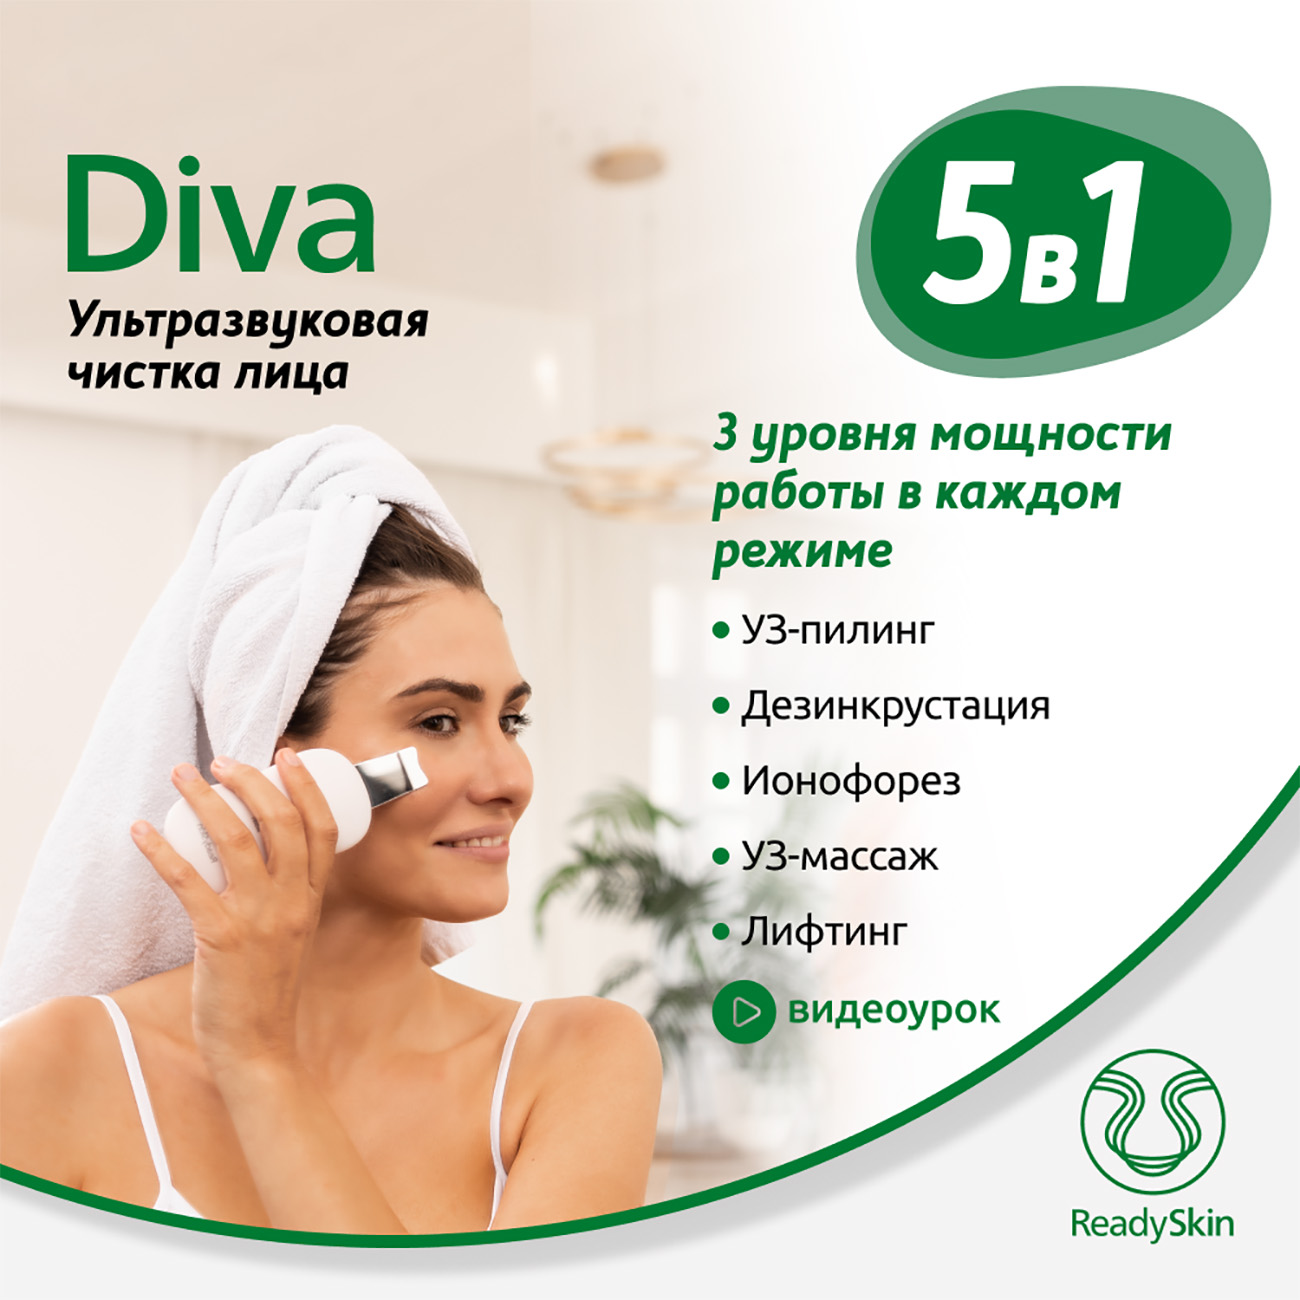 Аппарат ReadySkin Diva для ультразвуковой чистки лица массажа и микротокового лифтинга косметологический ультразвуковой аппарат для похудения auro кавитон lw101 4 в 1 кавитация